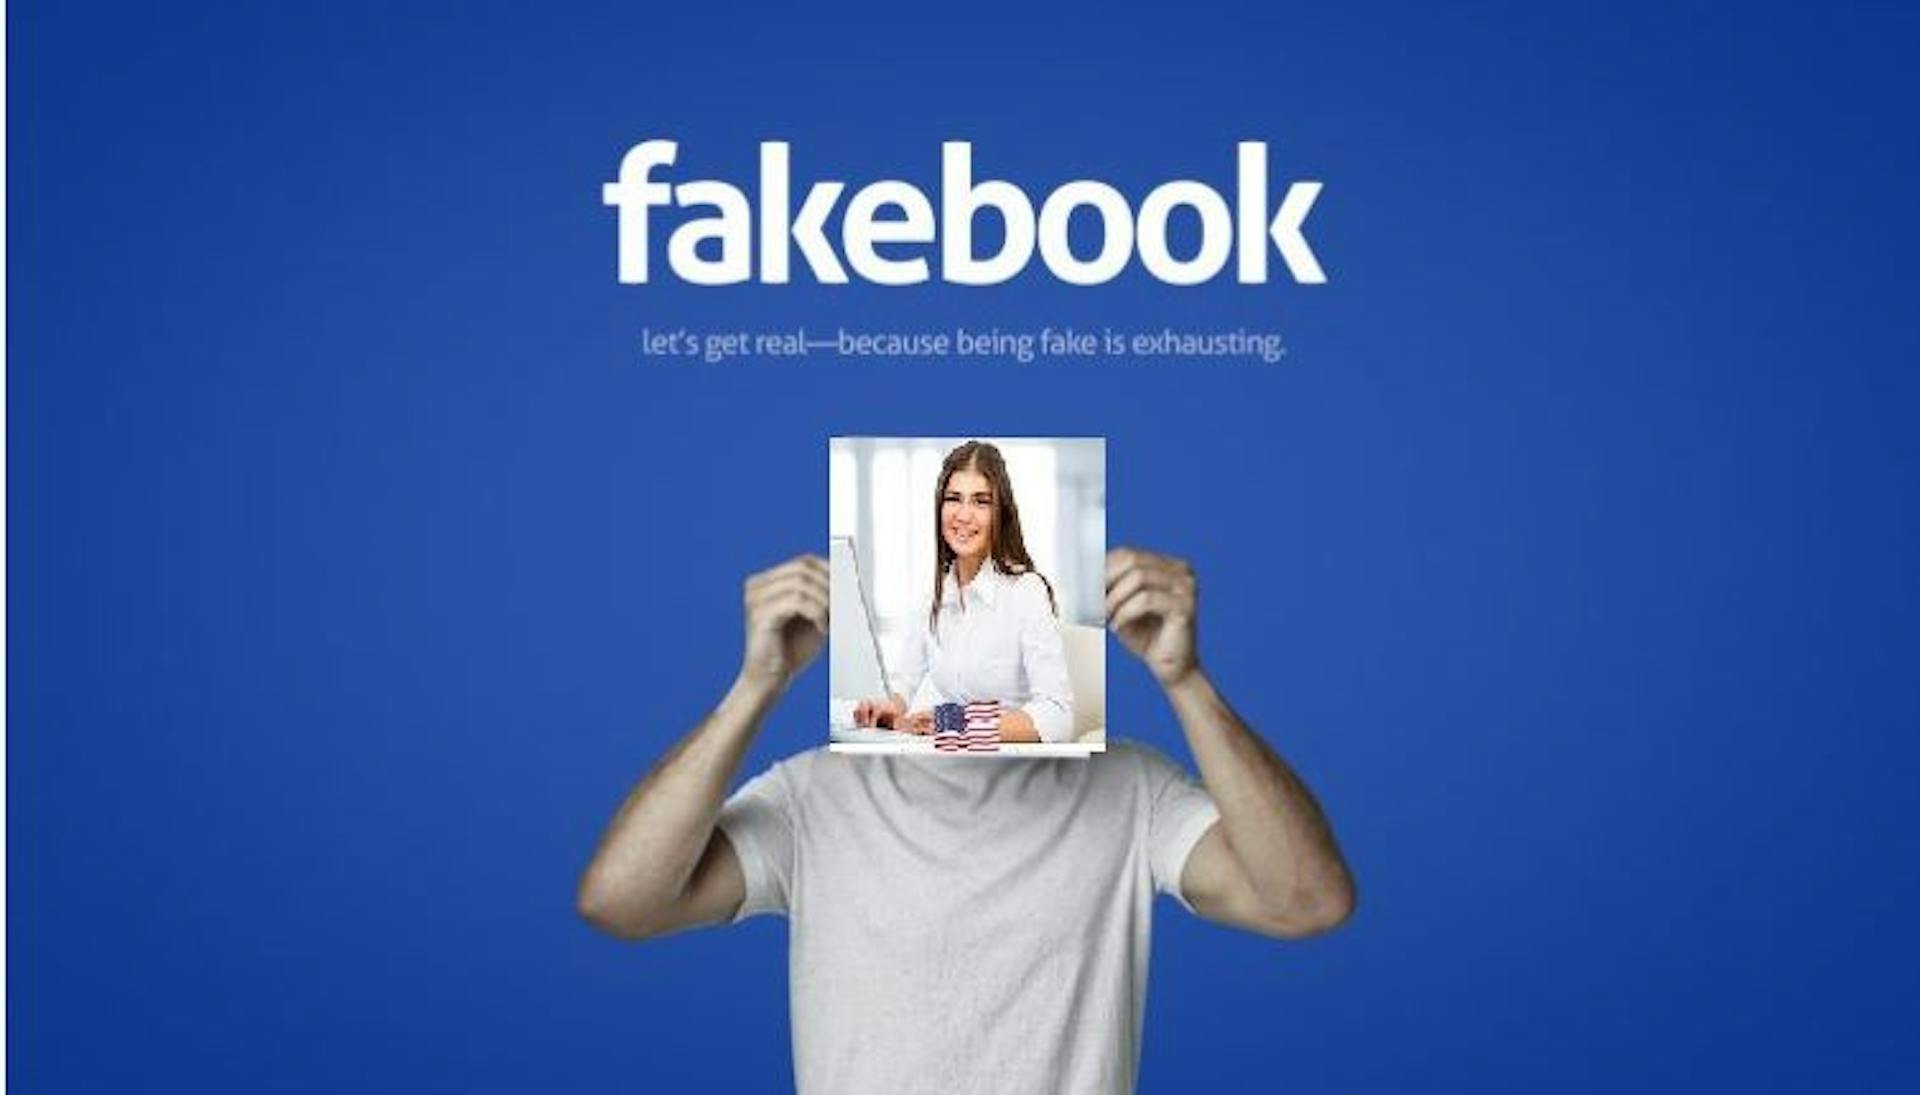 featured image - Conheça Lucy Audrey, o perfil falso desonesto que o Facebook se recusa a suspender